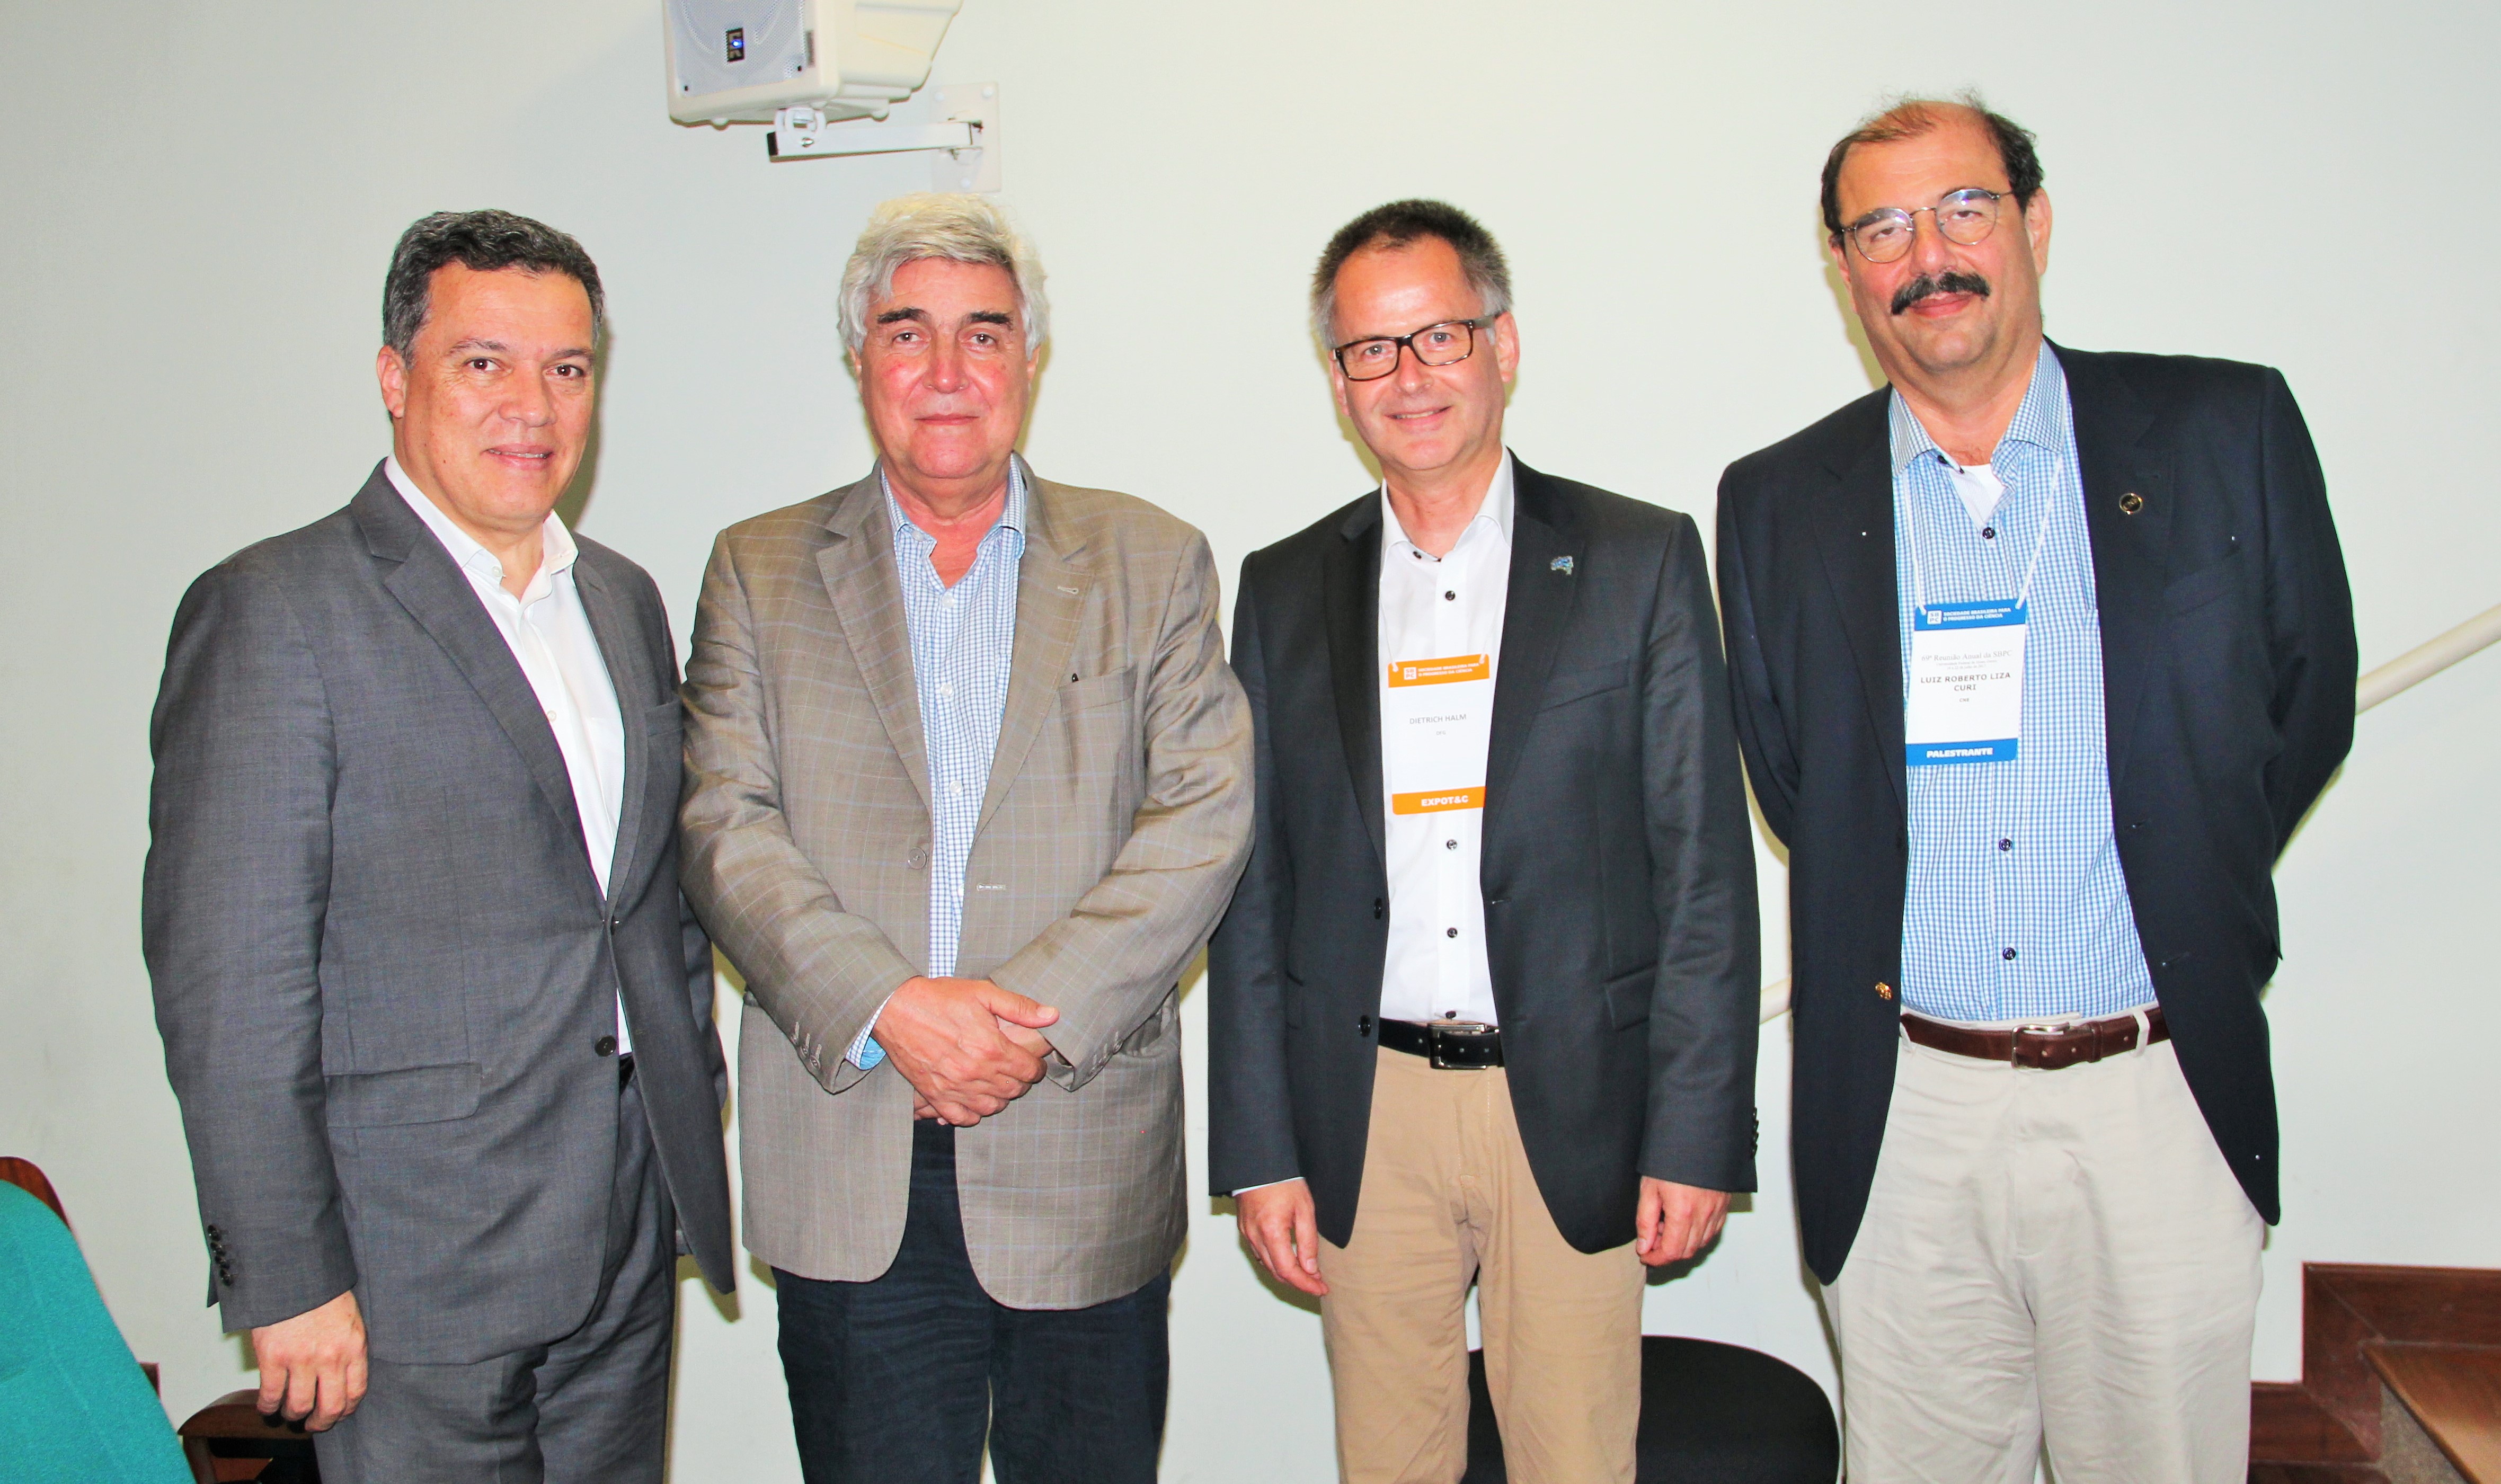 Jaime Ramírez, reitor da UFMG; Abílio Neves, presidente da Capes; Dietrich Halm, diretor de cooperação internacional da DFG com a América Latina; e Luiz Roberto Curi, do MCTIC